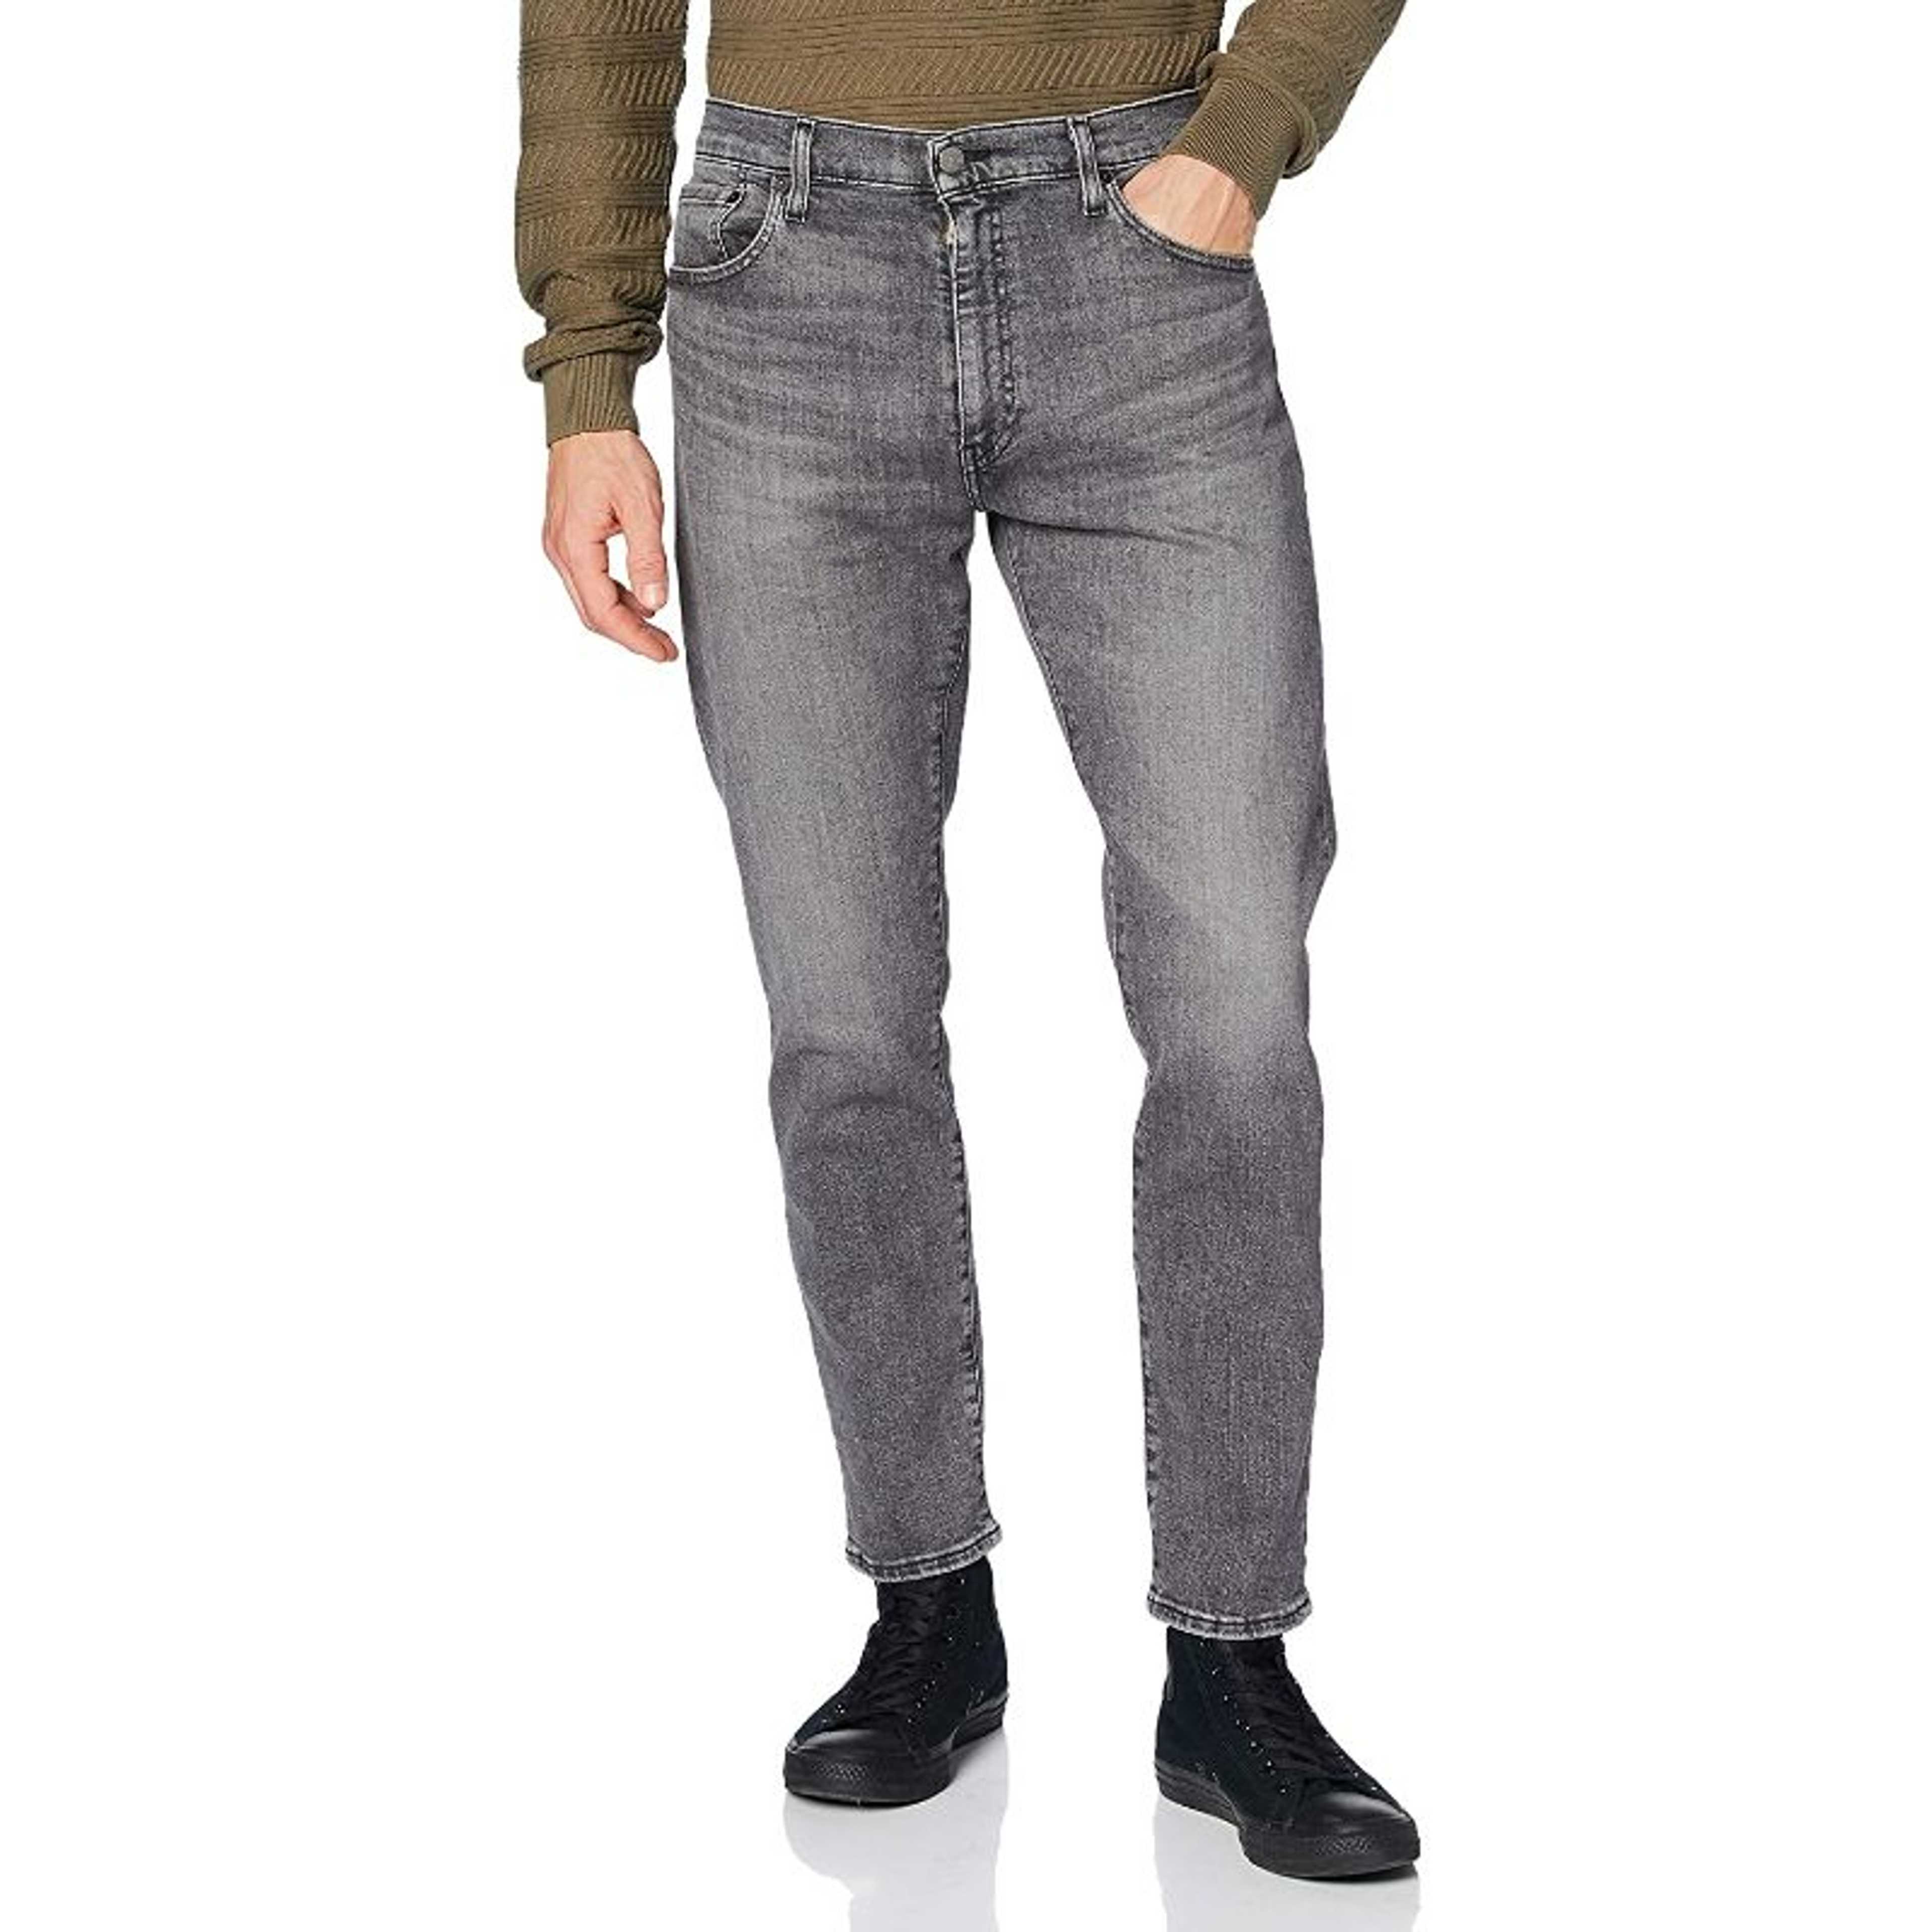 Rubahas Men’s Slim Fit Denim Jeans Pant in Grey Color